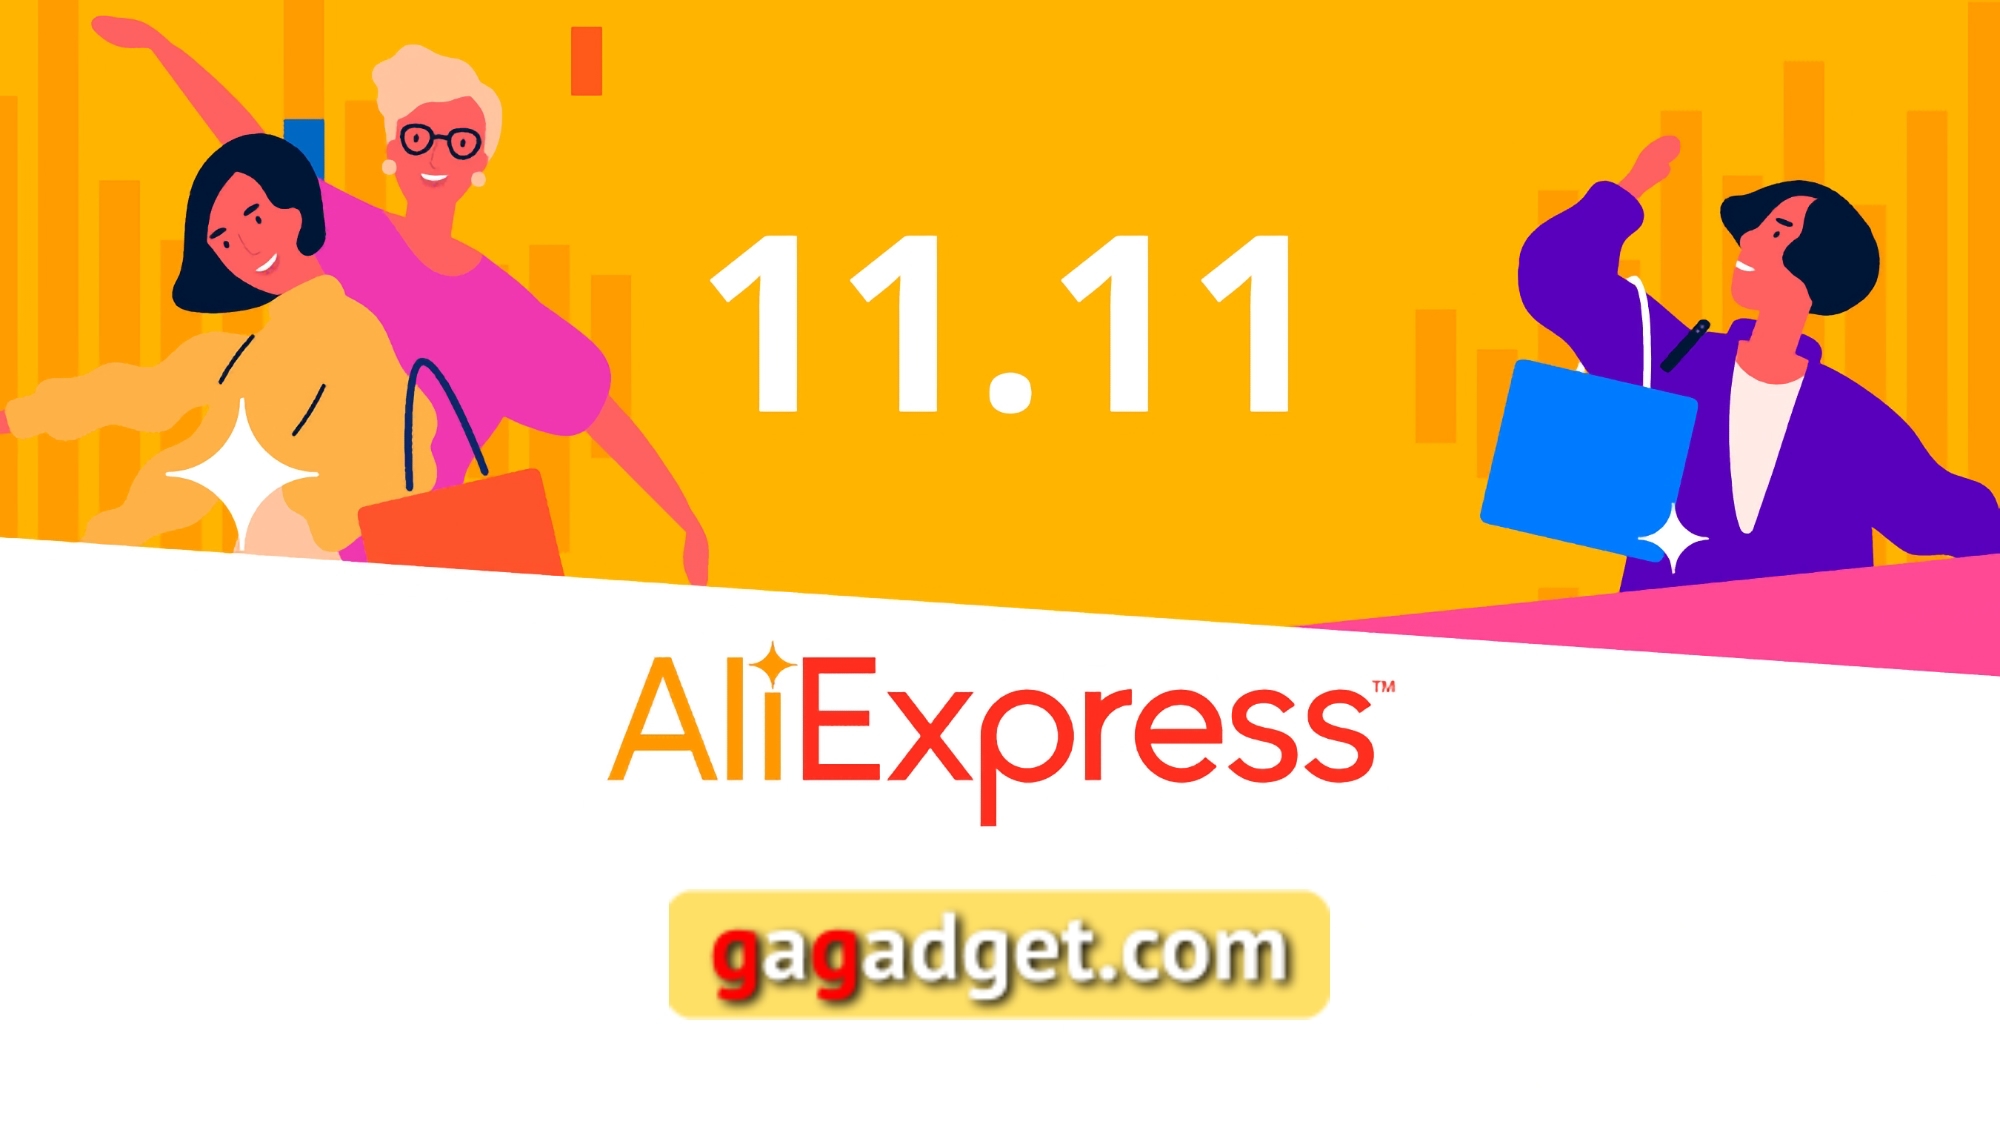 Specjalne kody promocyjne AliExpress na wyprzedaż 11.11 dla czytelników gagadget